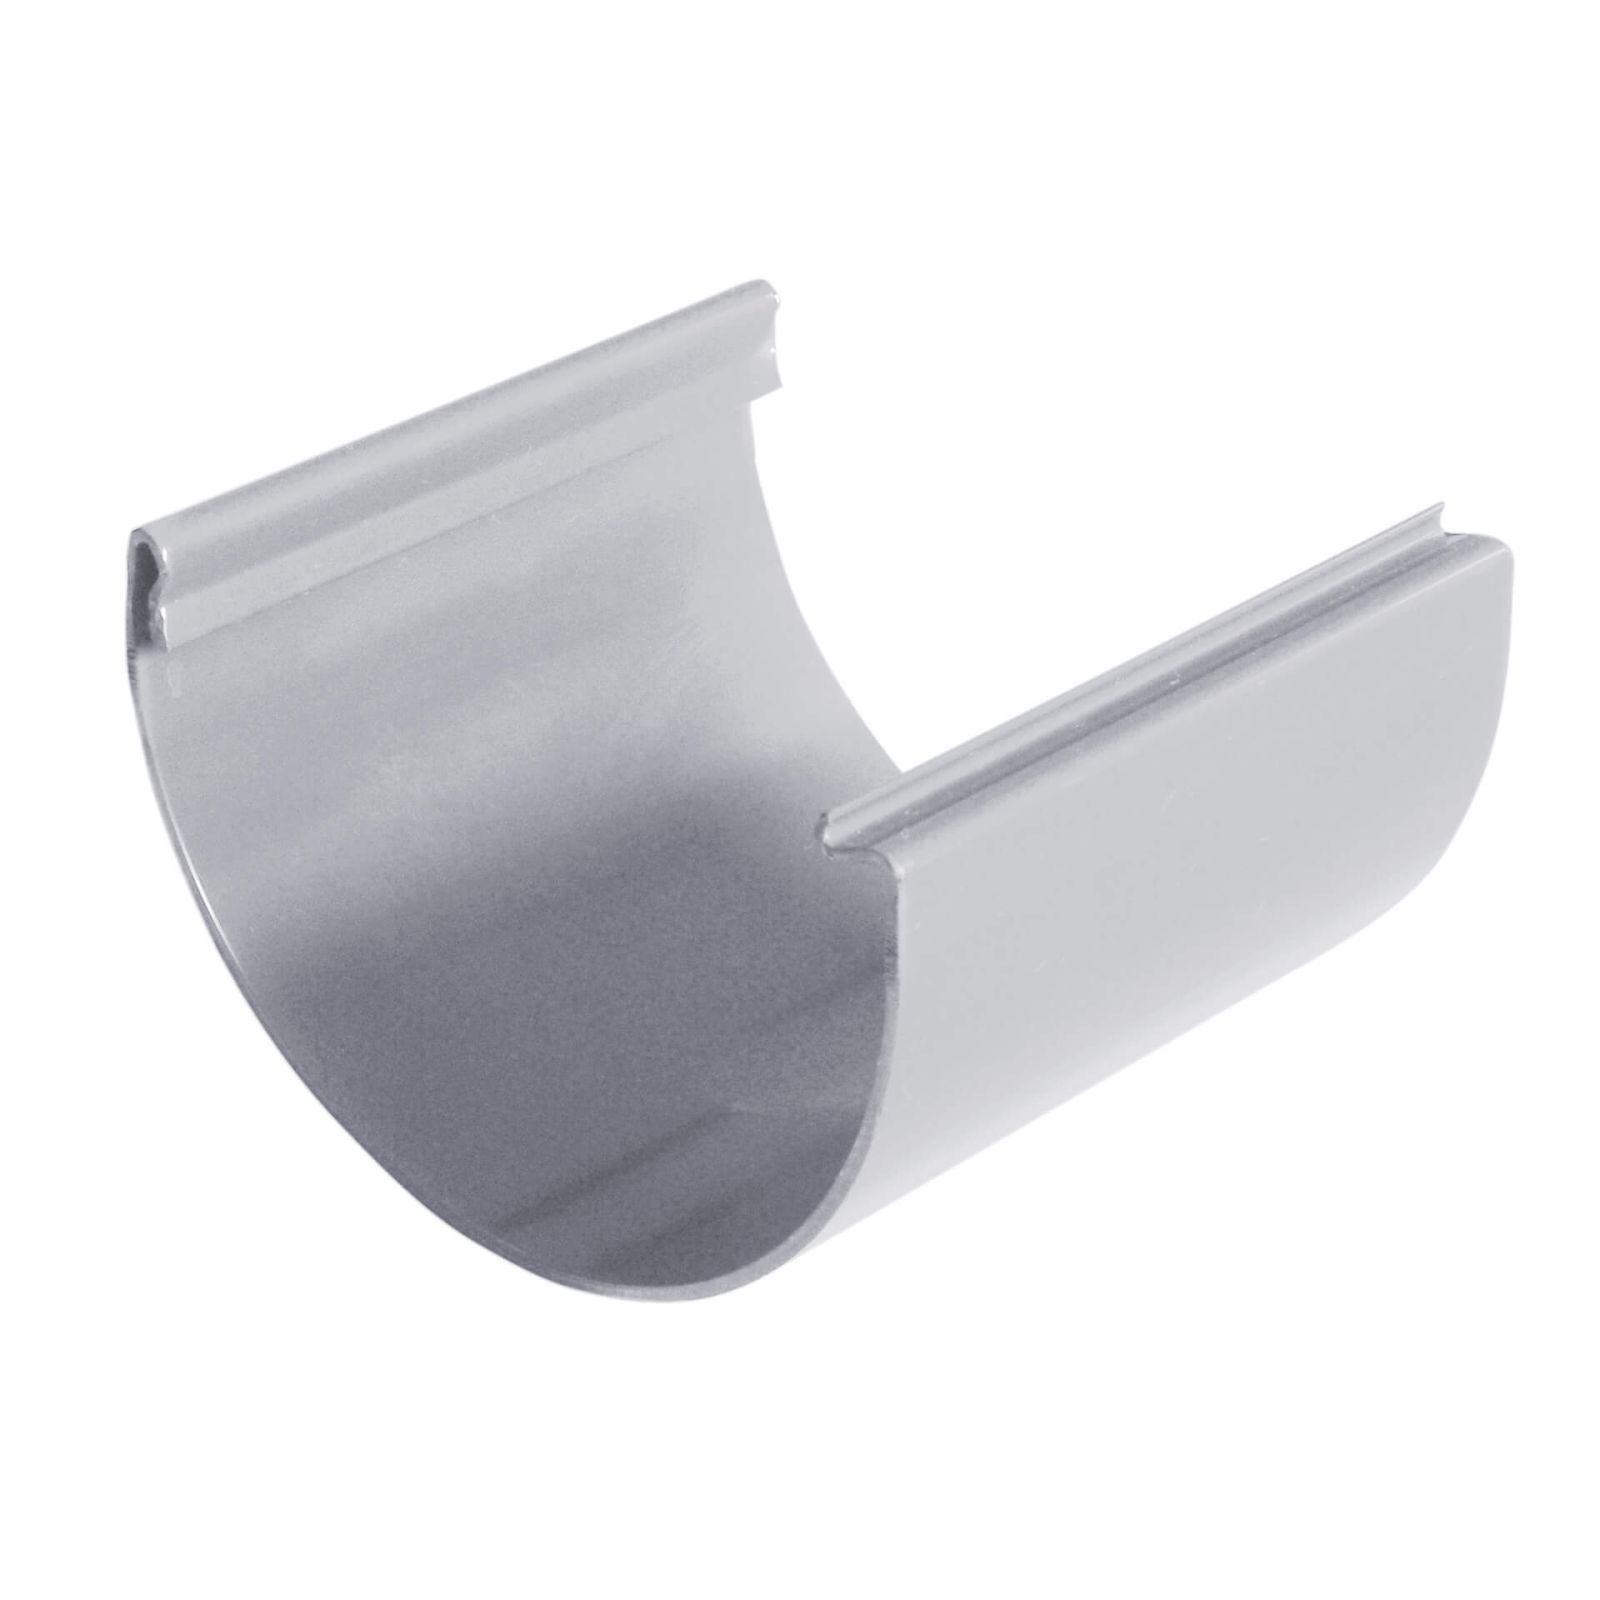 Kunststoff Dachrinnen Sparpaket 6 m | Ø 125/90 mm | Farbe Grau #3